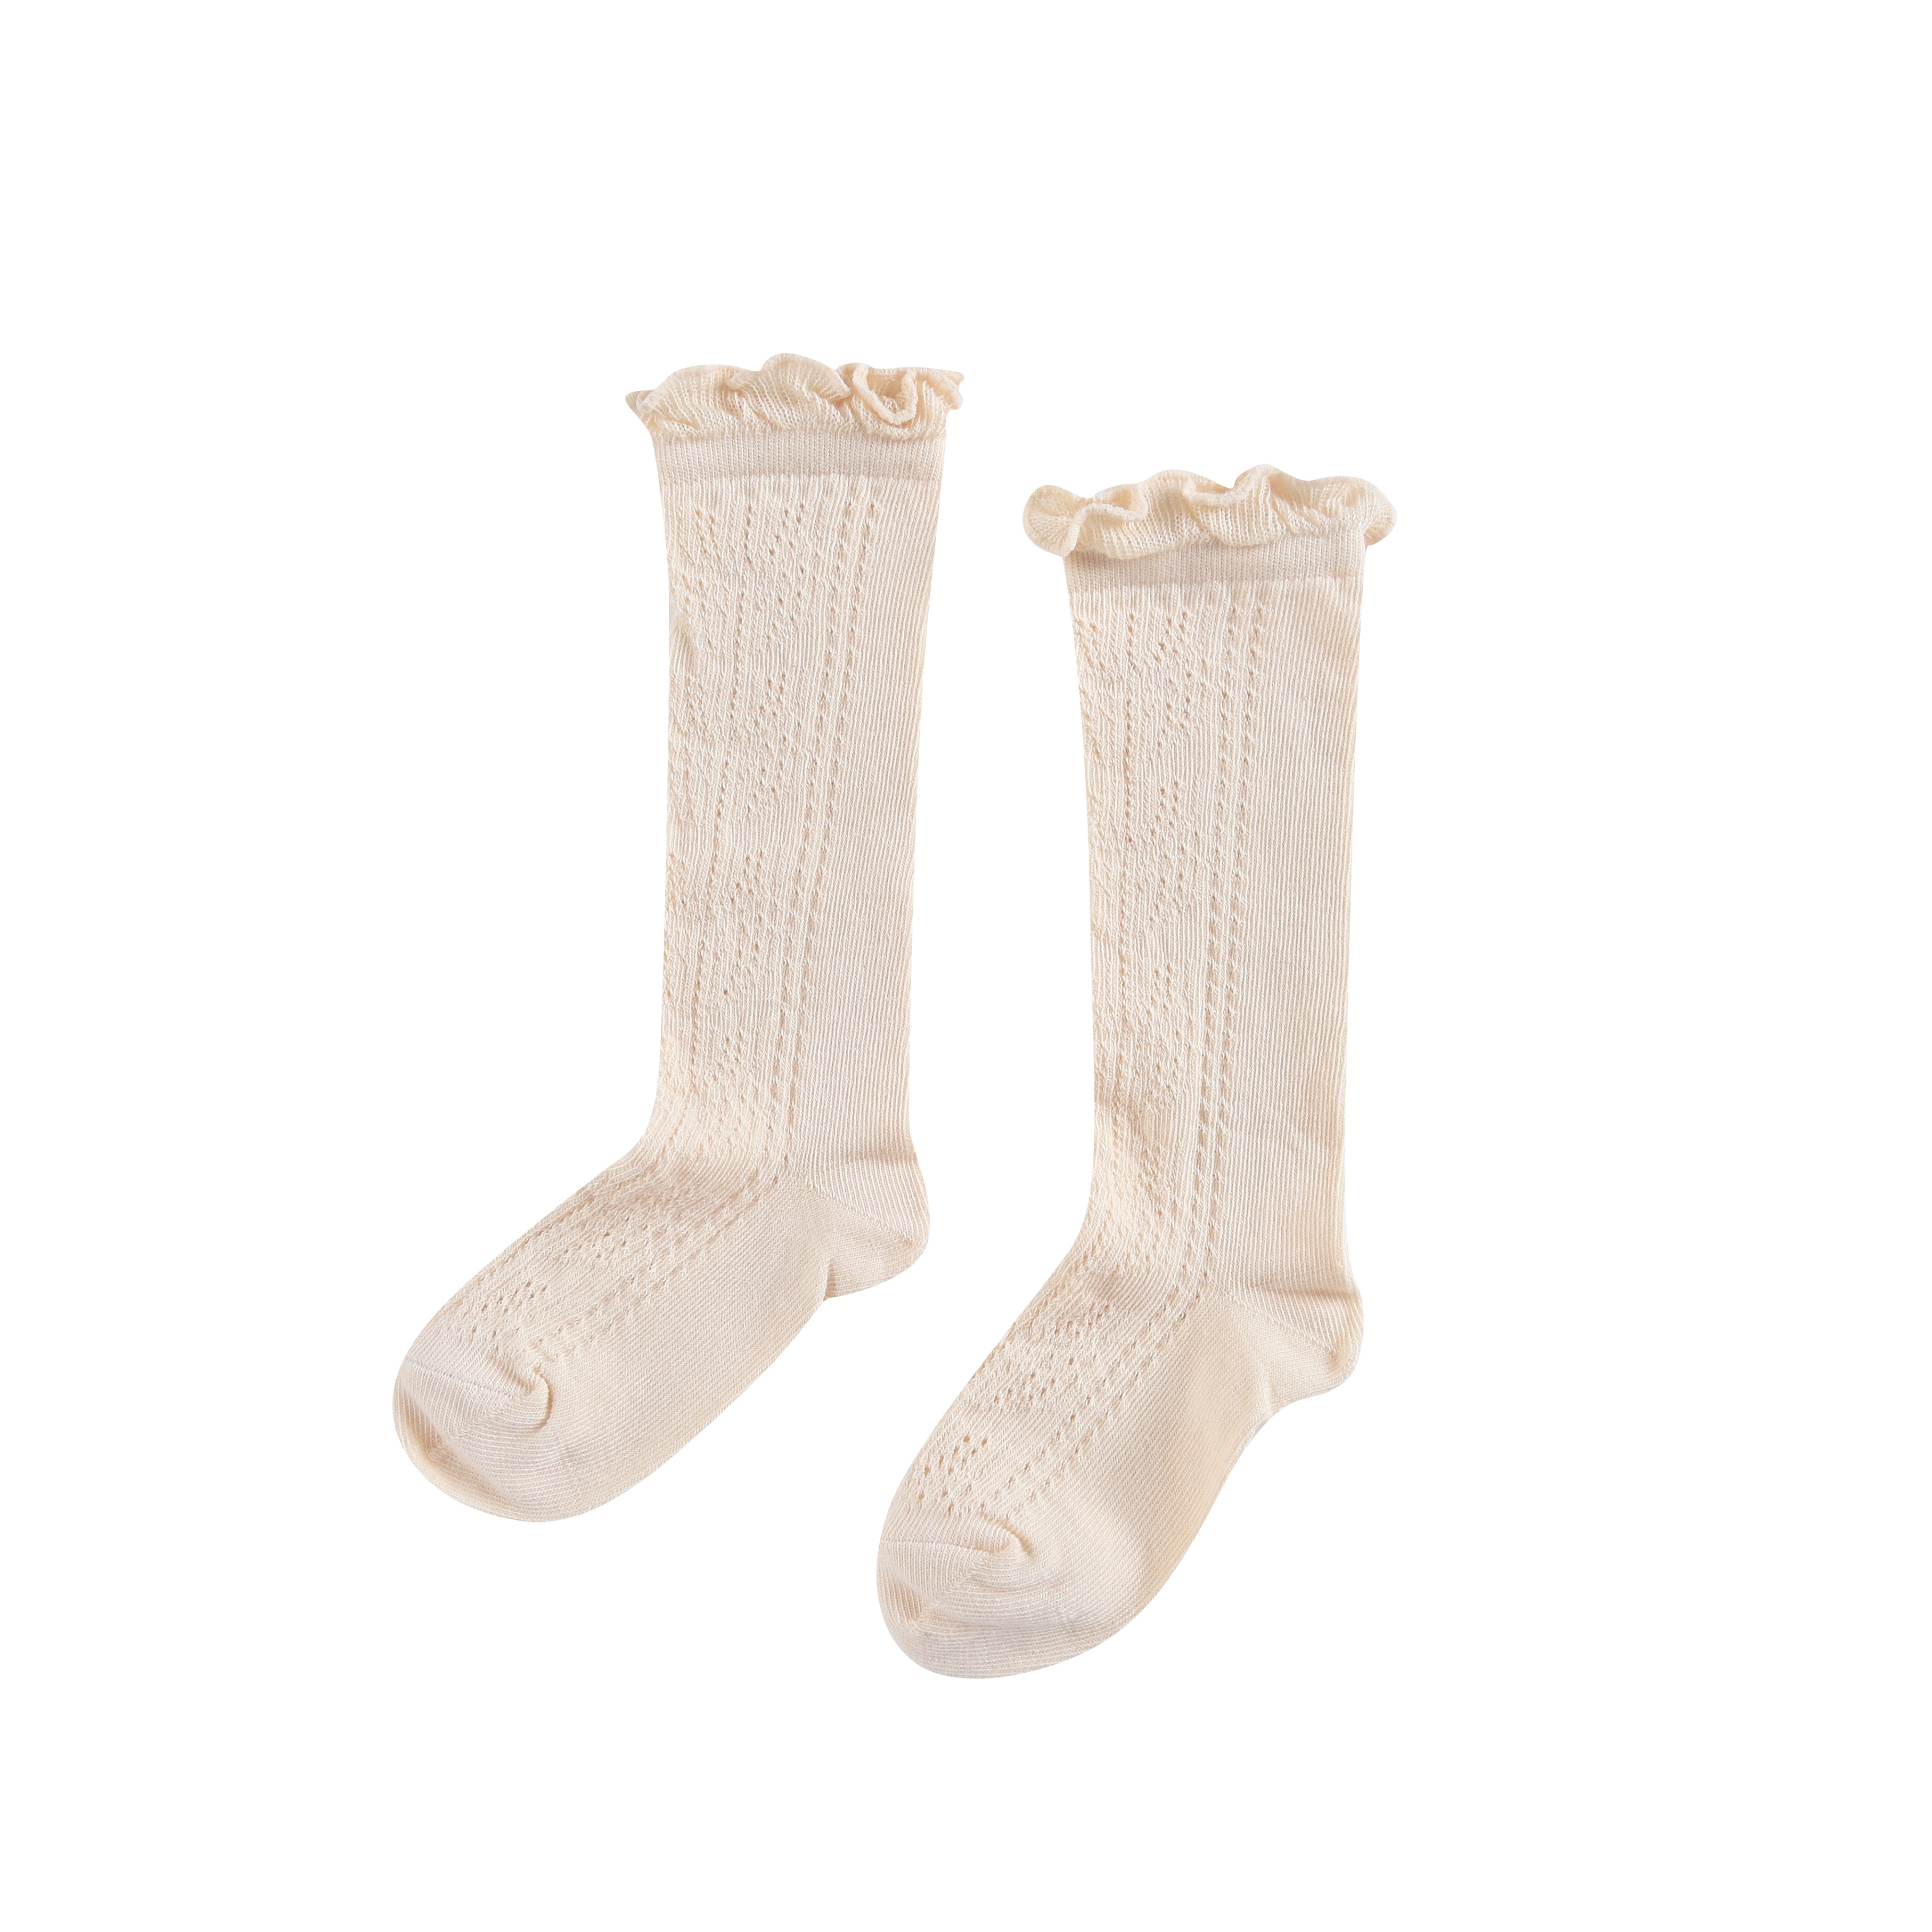 Boys & Girls White Socks